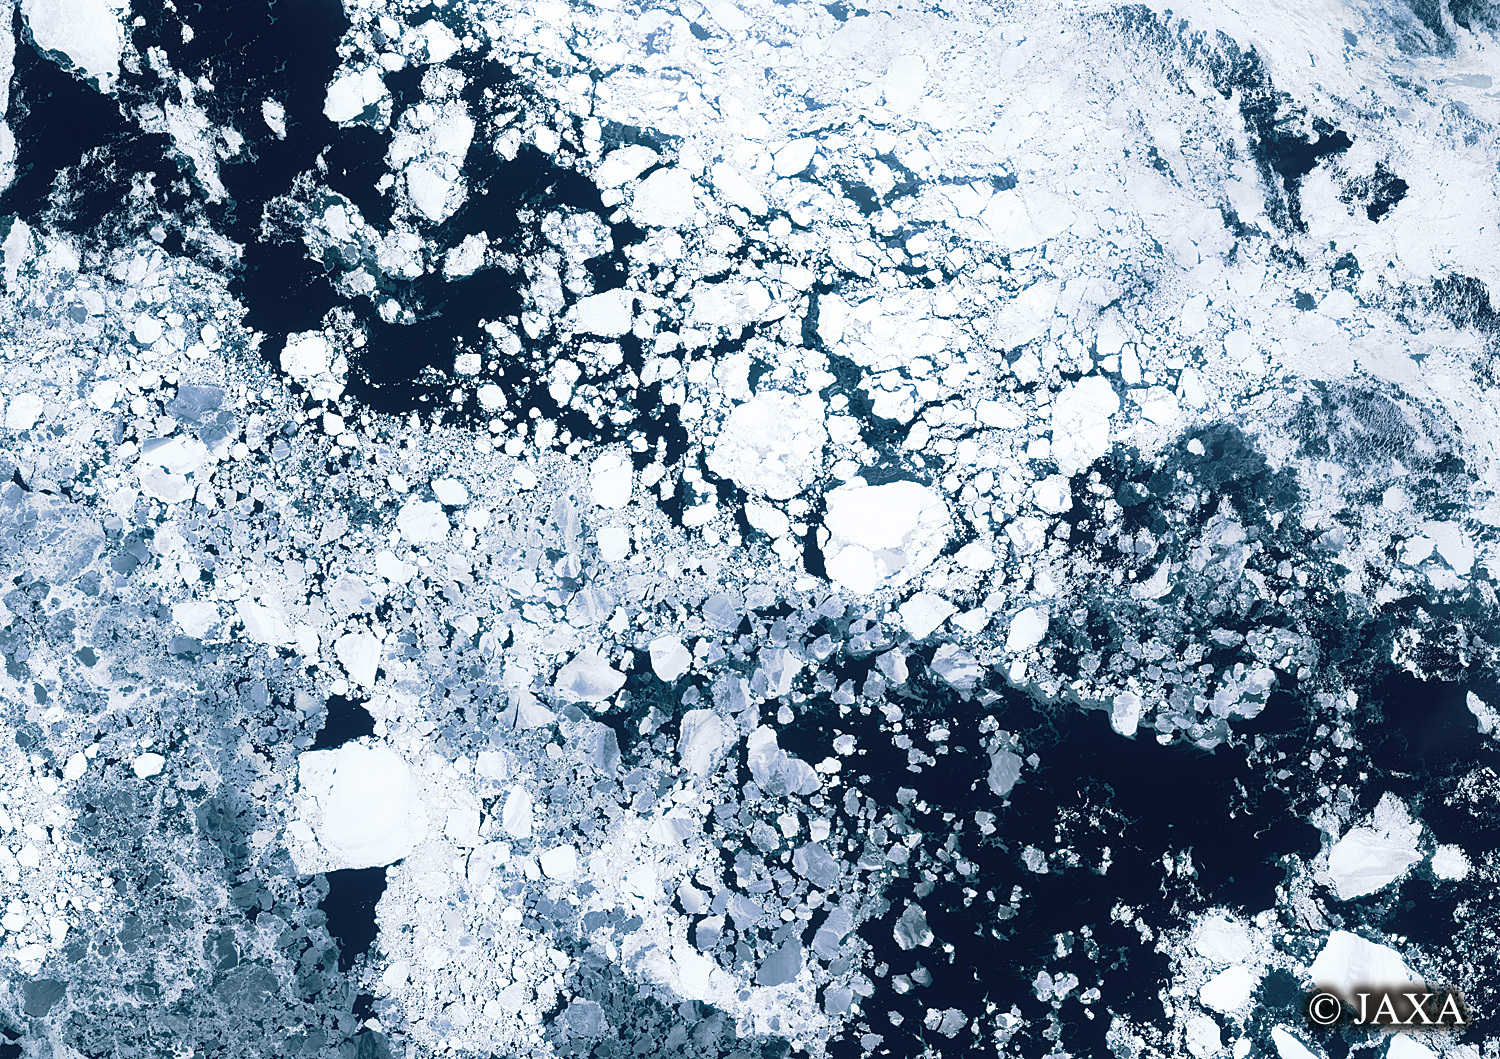 だいちから見た日本の都市 オホーツク海の流氷:衛星画像